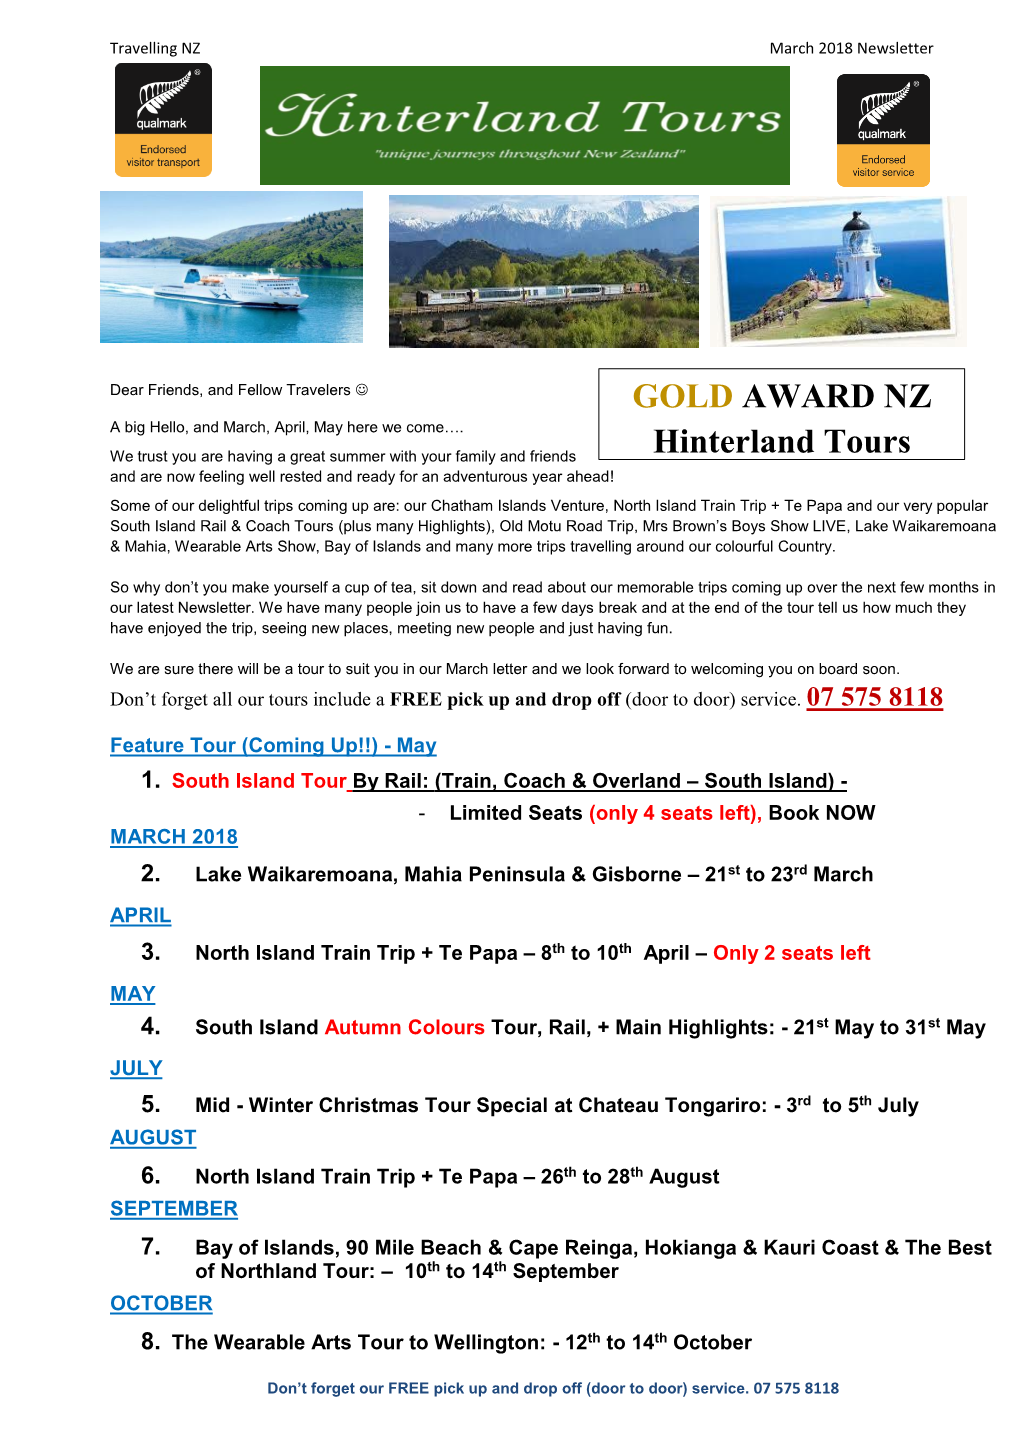 GOLD AWARD NZ Hinterland Tours